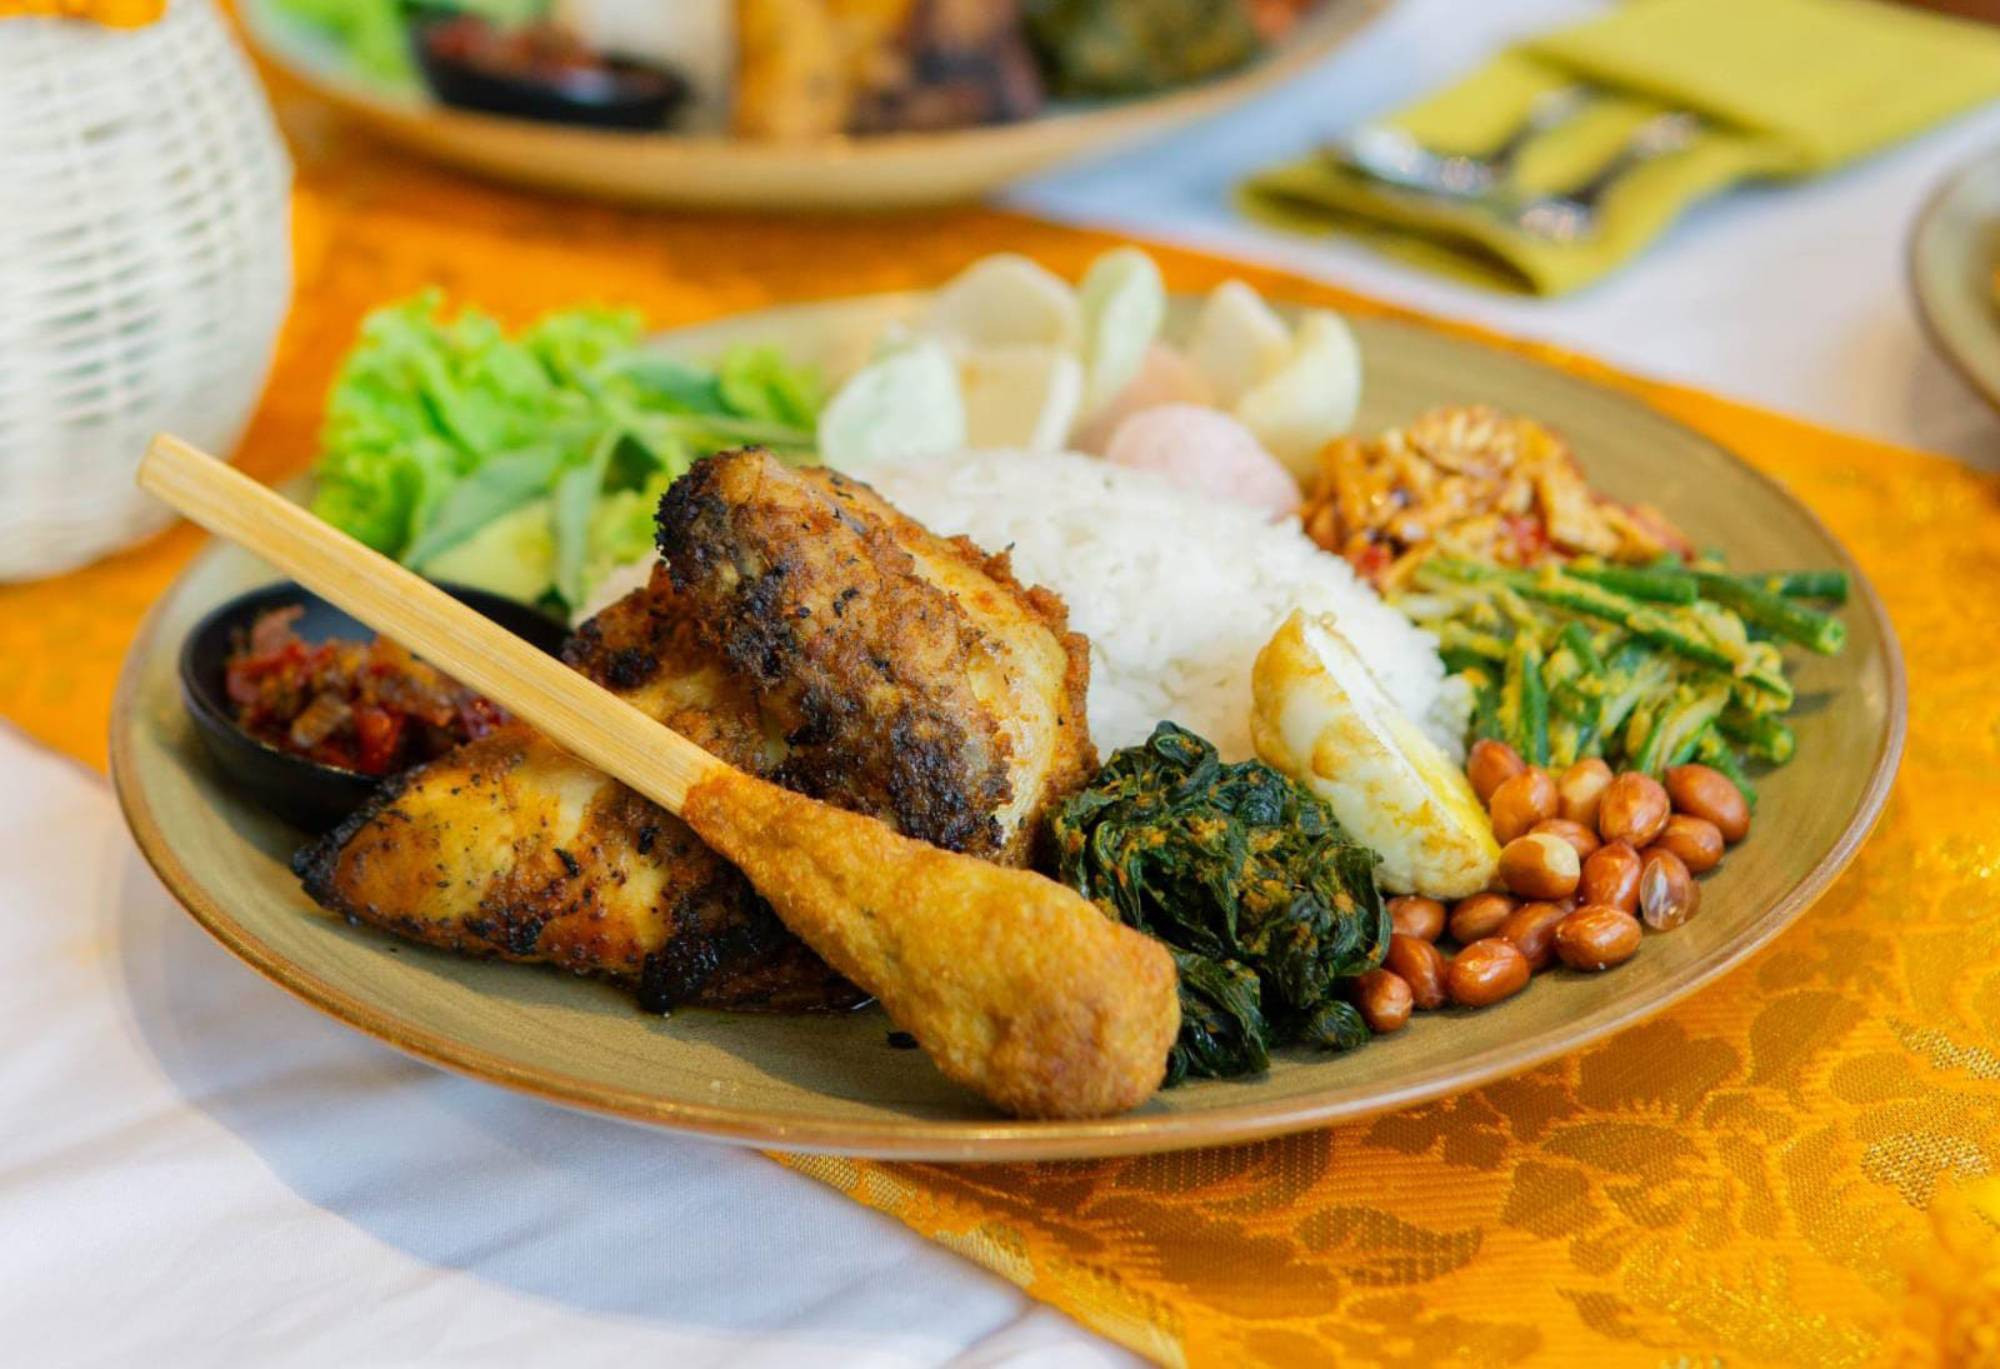 Eksplorasi Kuliner Indonesia Bersama Sarirasa Catering dan Balenusa - JPNN.com